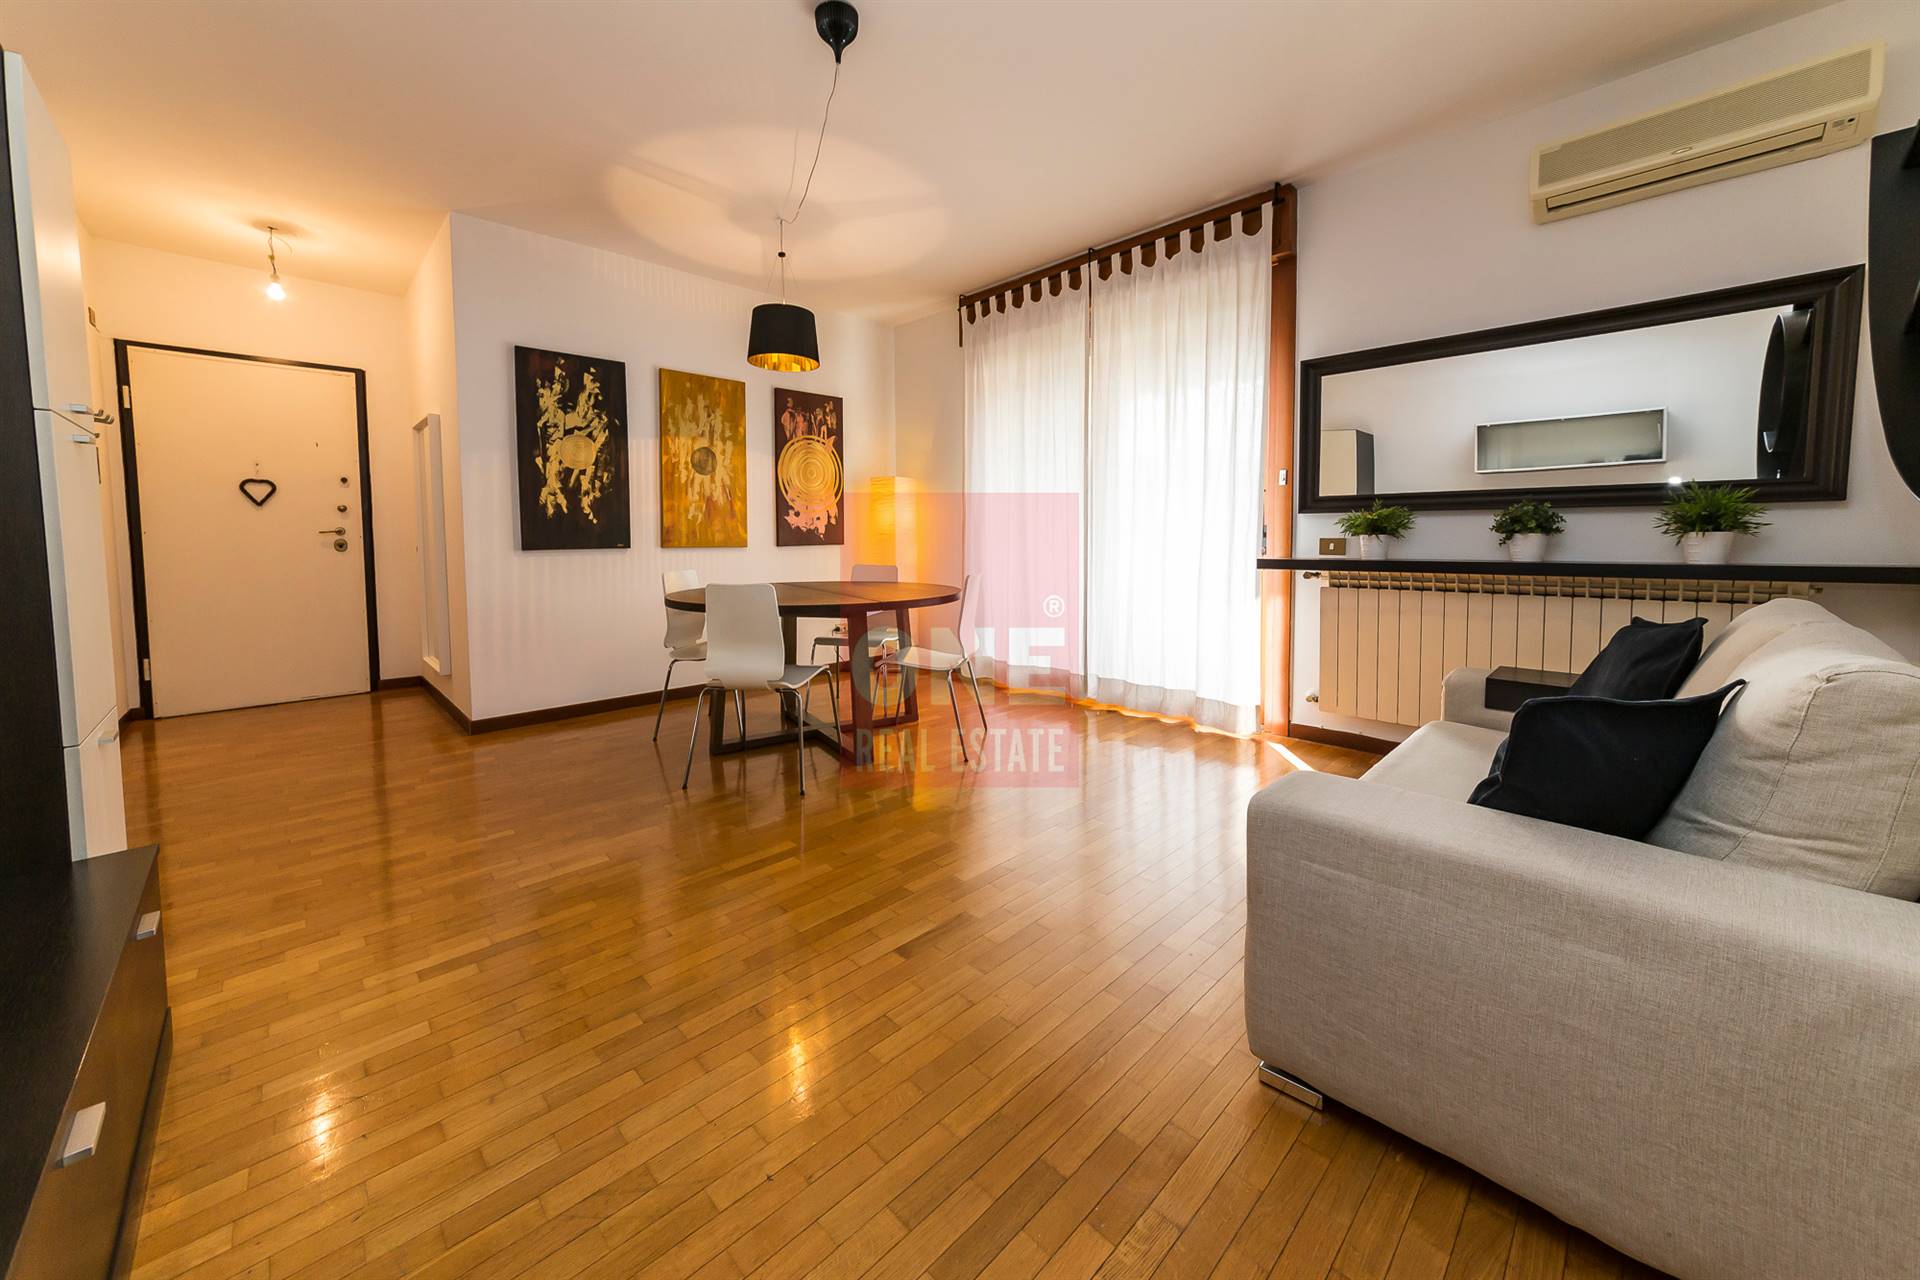 Appartamento in affitto a Monza, 3 locali, zona Zona: 3 . Via Libertà, Cederna, San Albino, prezzo € 950 | CambioCasa.it